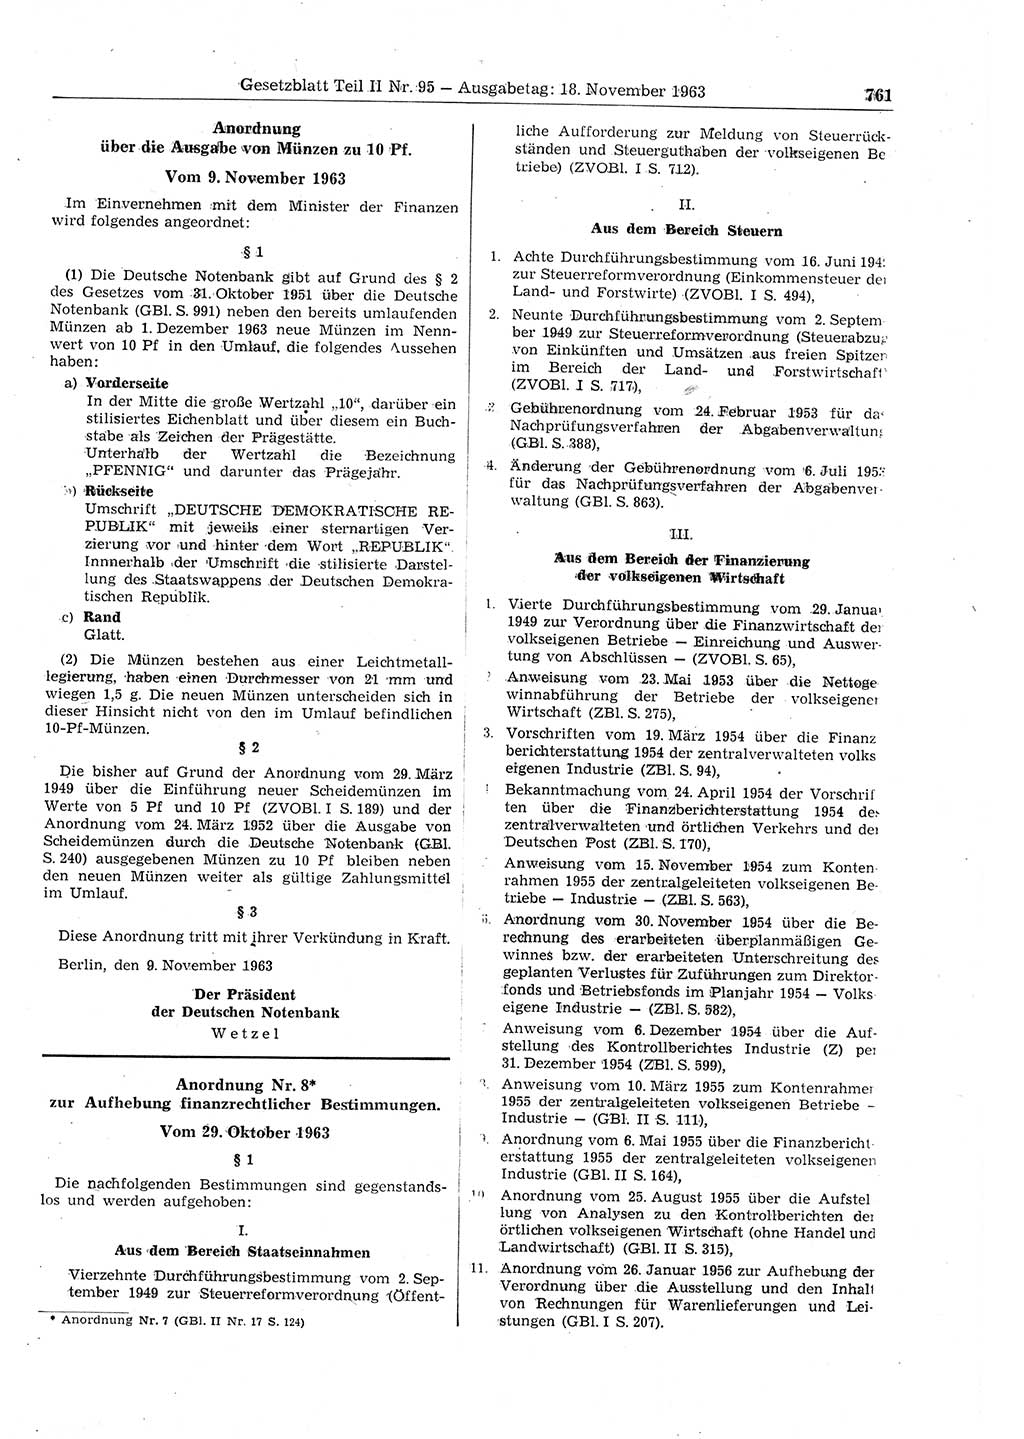 Gesetzblatt (GBl.) der Deutschen Demokratischen Republik (DDR) Teil ⅠⅠ 1963, Seite 761 (GBl. DDR ⅠⅠ 1963, S. 761)